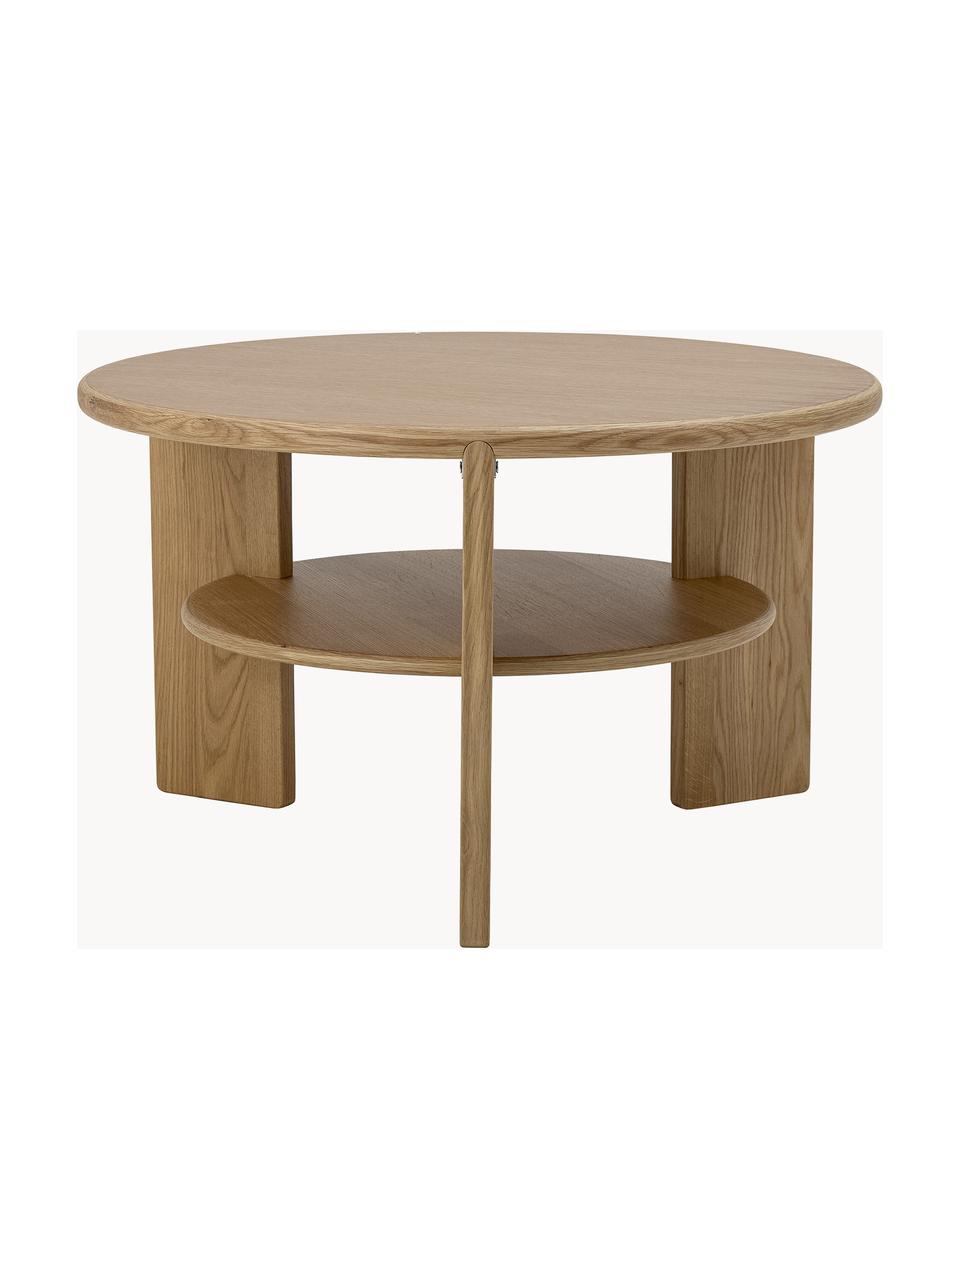 Kovový dřevěný konferenční stolek Lourdes, MDF deska (dřevovláknitá deska střední hustoty), Dřevo, Ø 72 cm